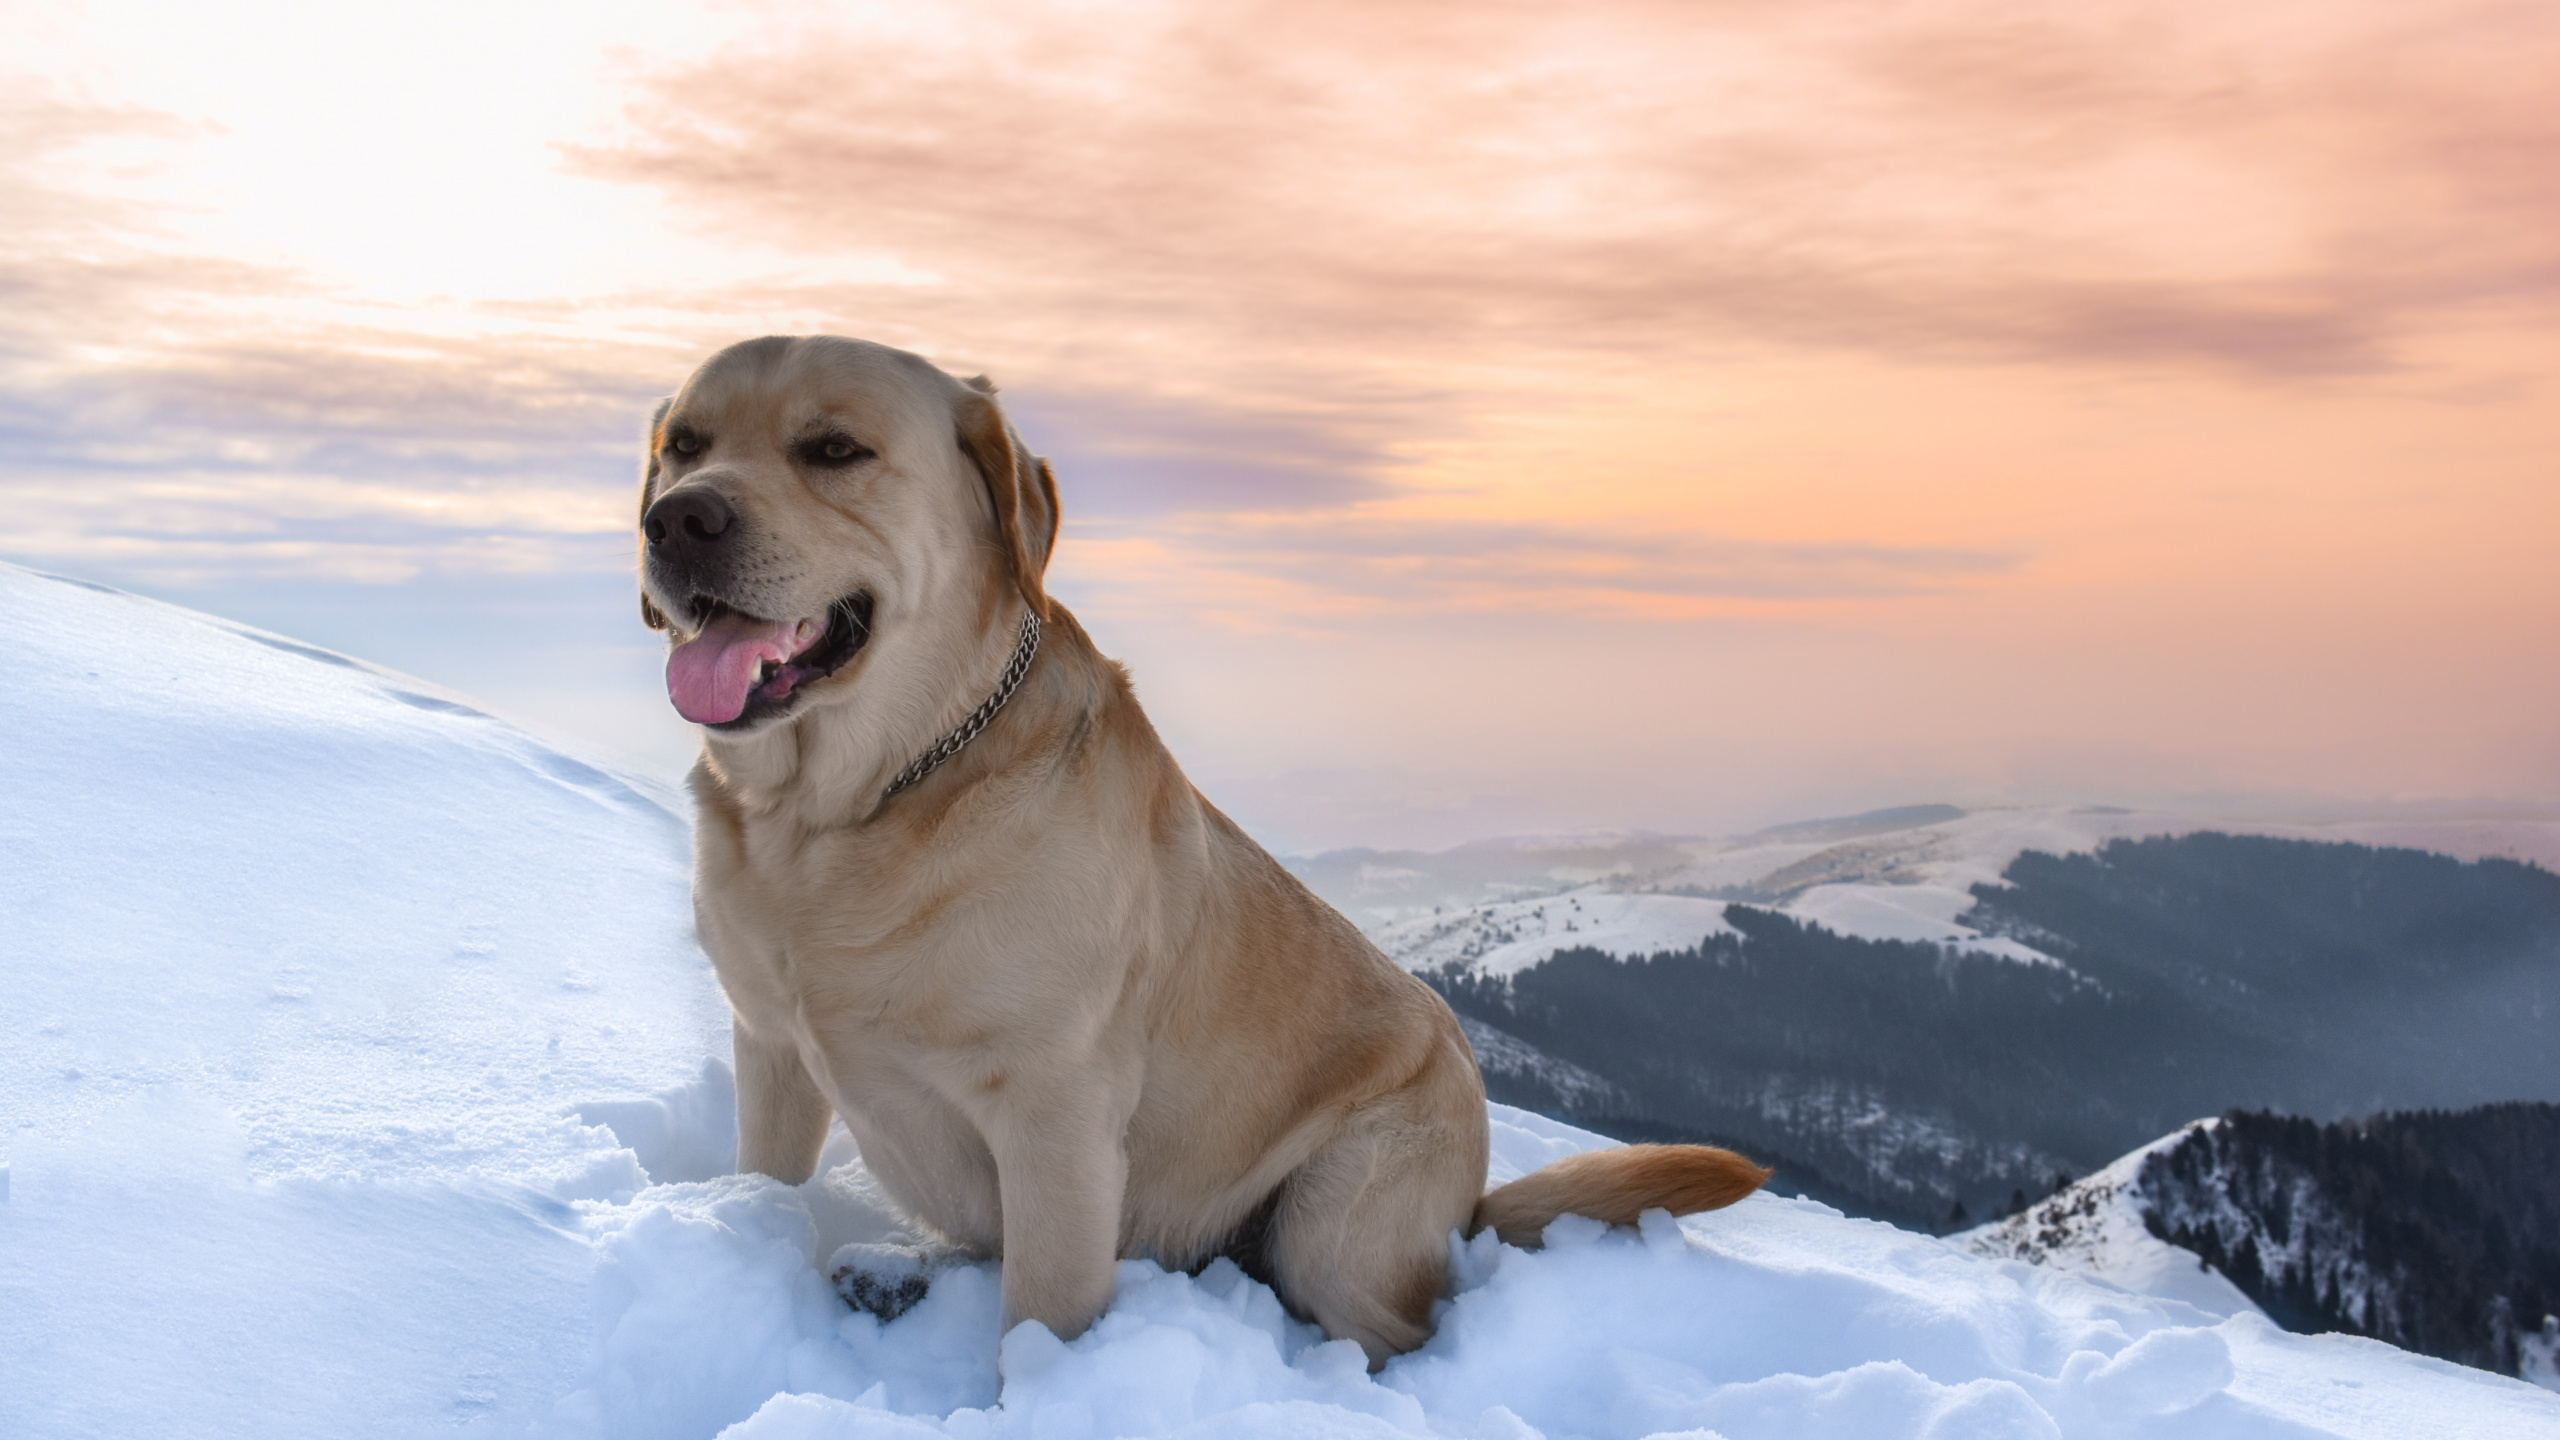 Brauner, Kurzhaariger Hund Auf Schneebedecktem Boden Tagsüber. Wallpaper in 2560x1440 Resolution